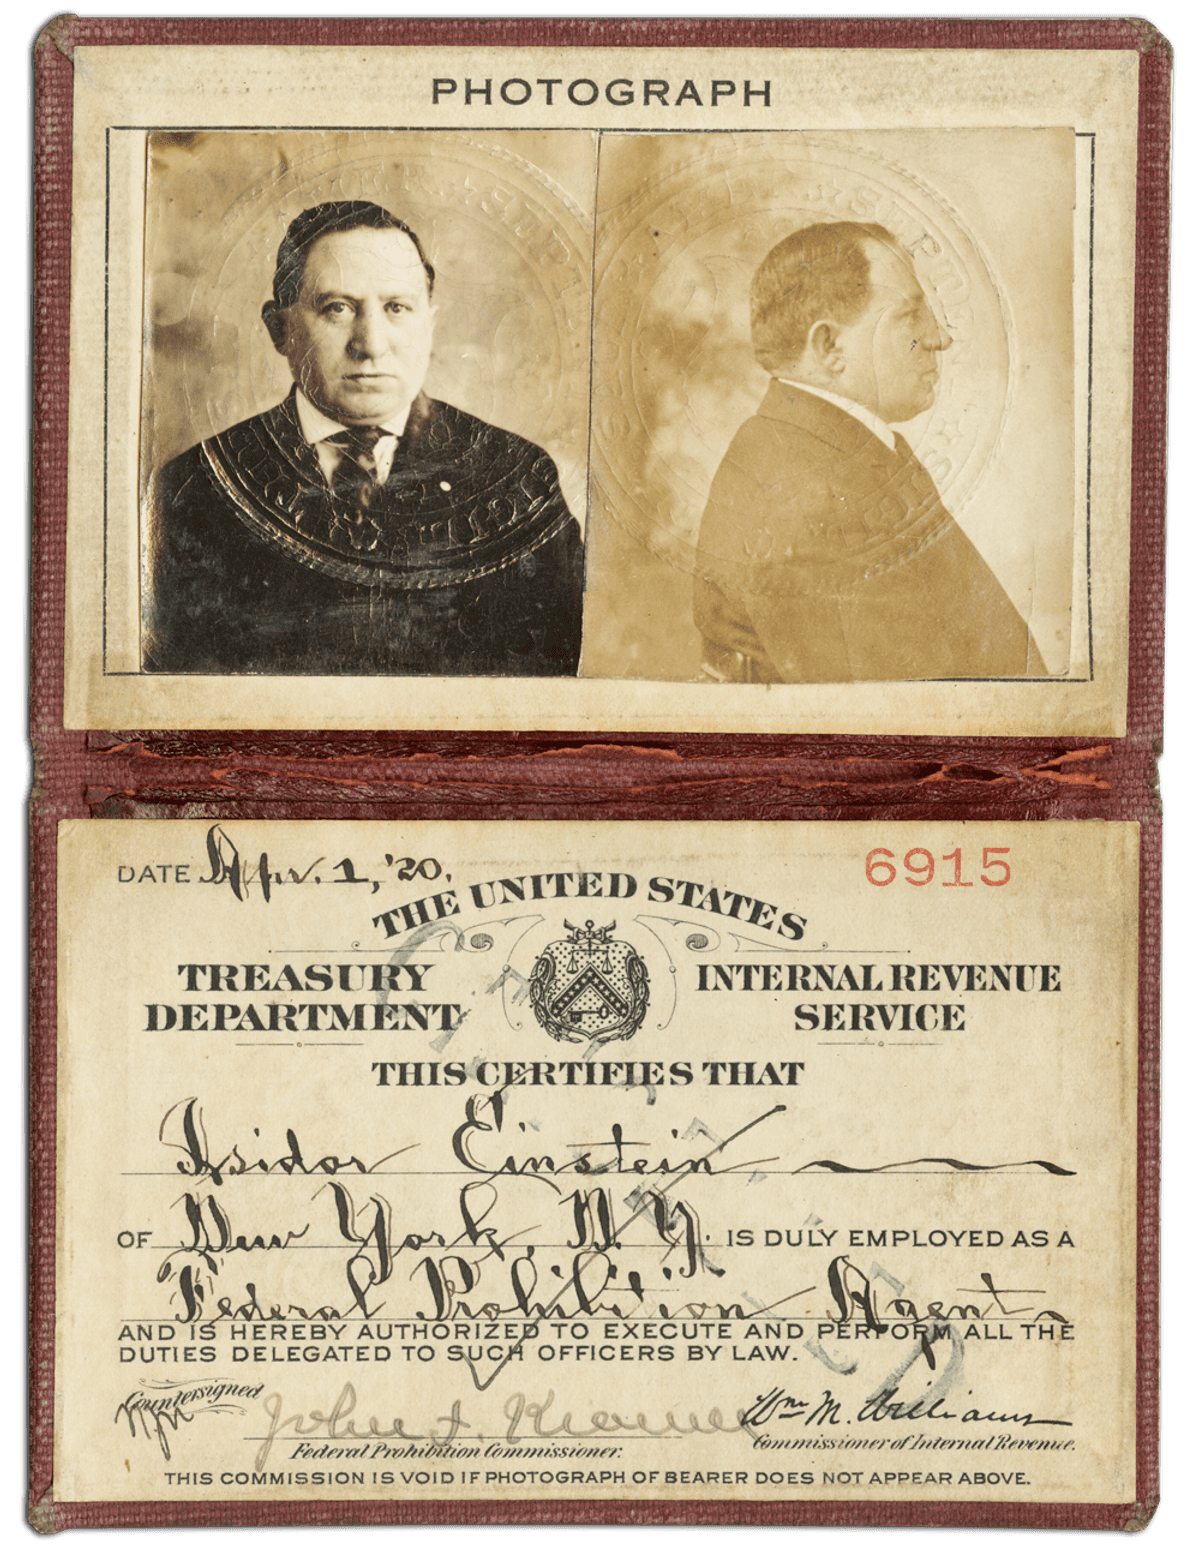 Izzy Einstein's Prohibition agent identification card